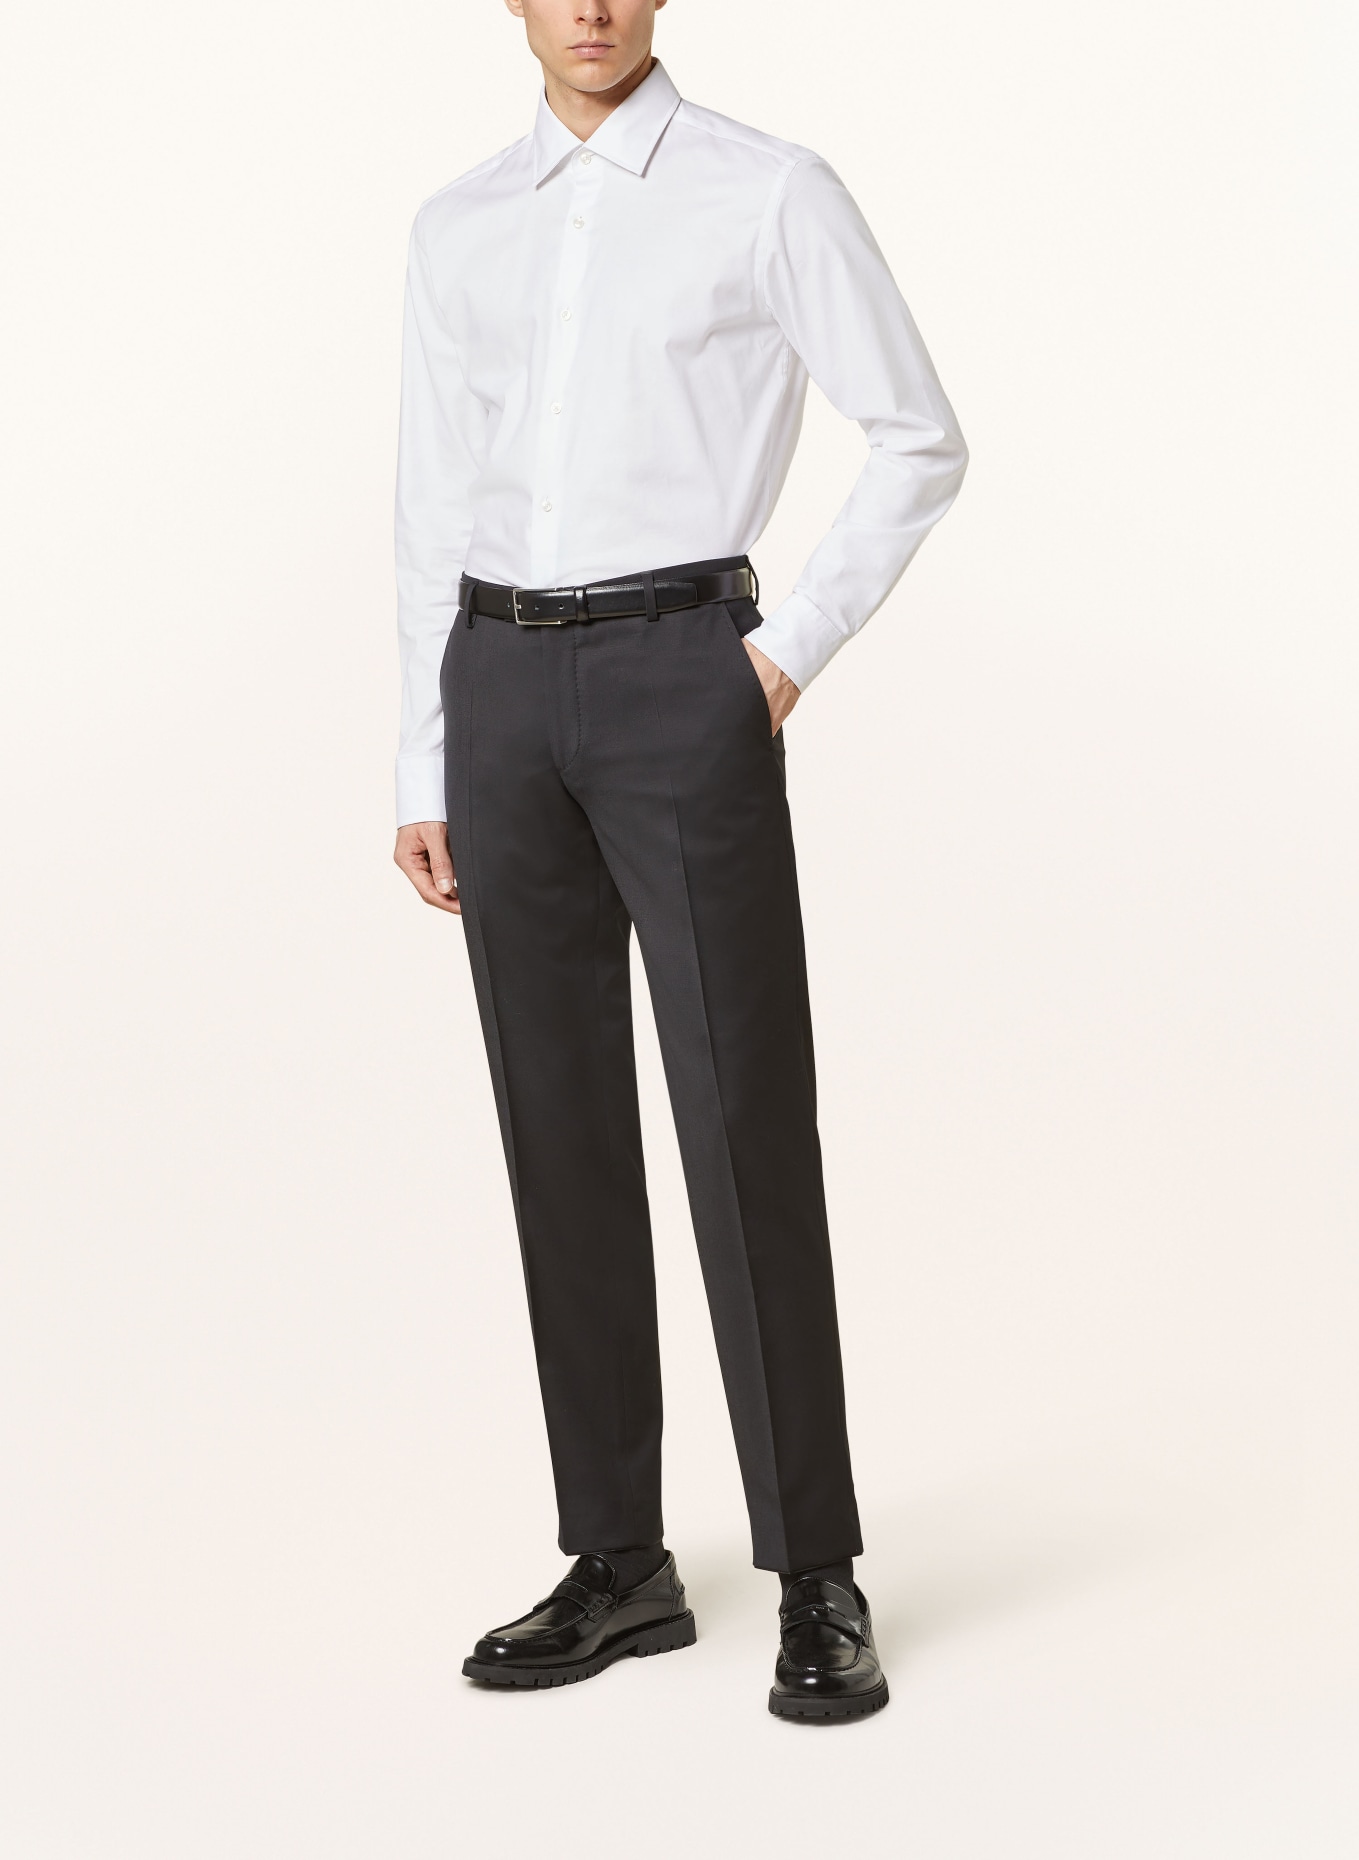 JOOP! Anzughose Slim Fit, Farbe: 001 Black                      001 (Bild 3)